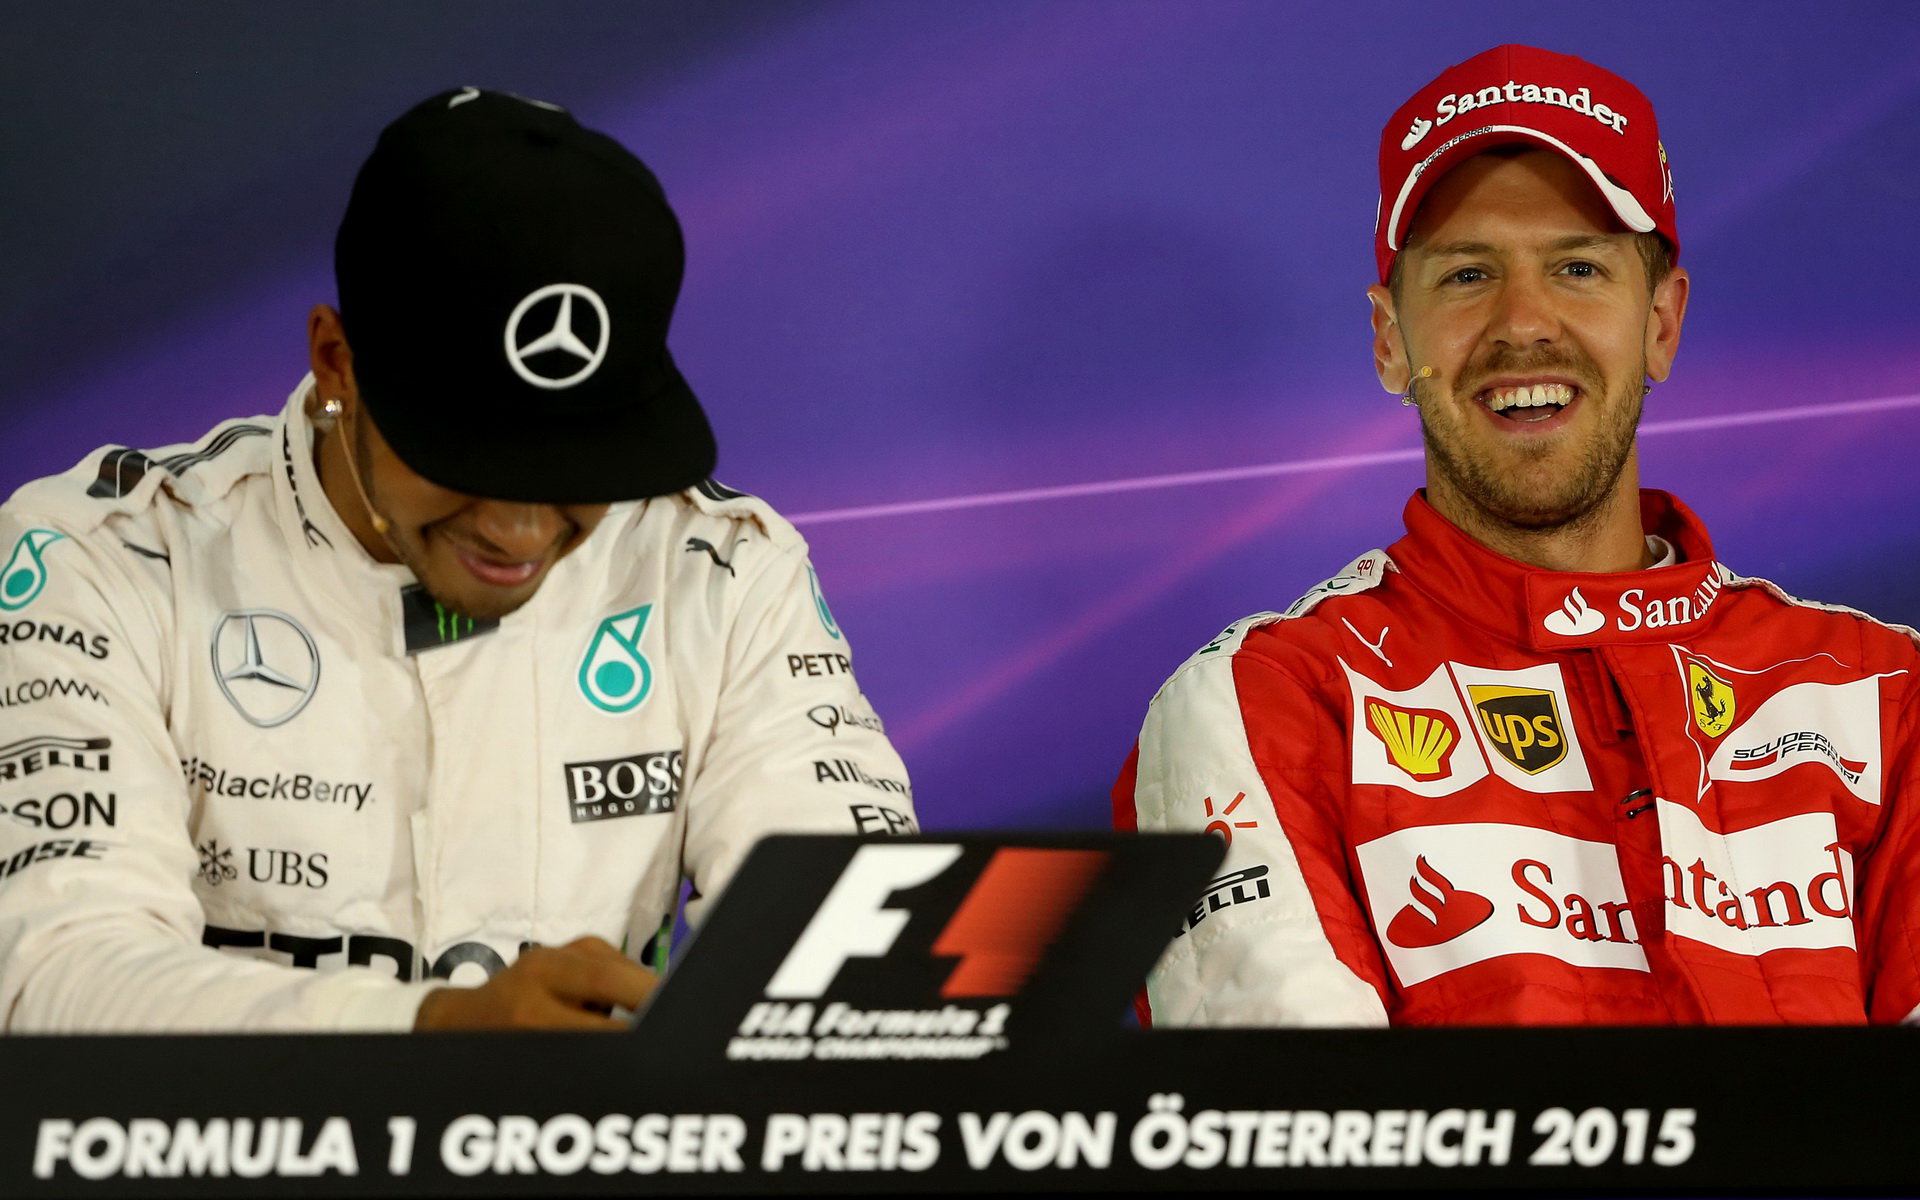 "Sebastian Vettel bude vždy jedním z nejsilnějších soupeřů"